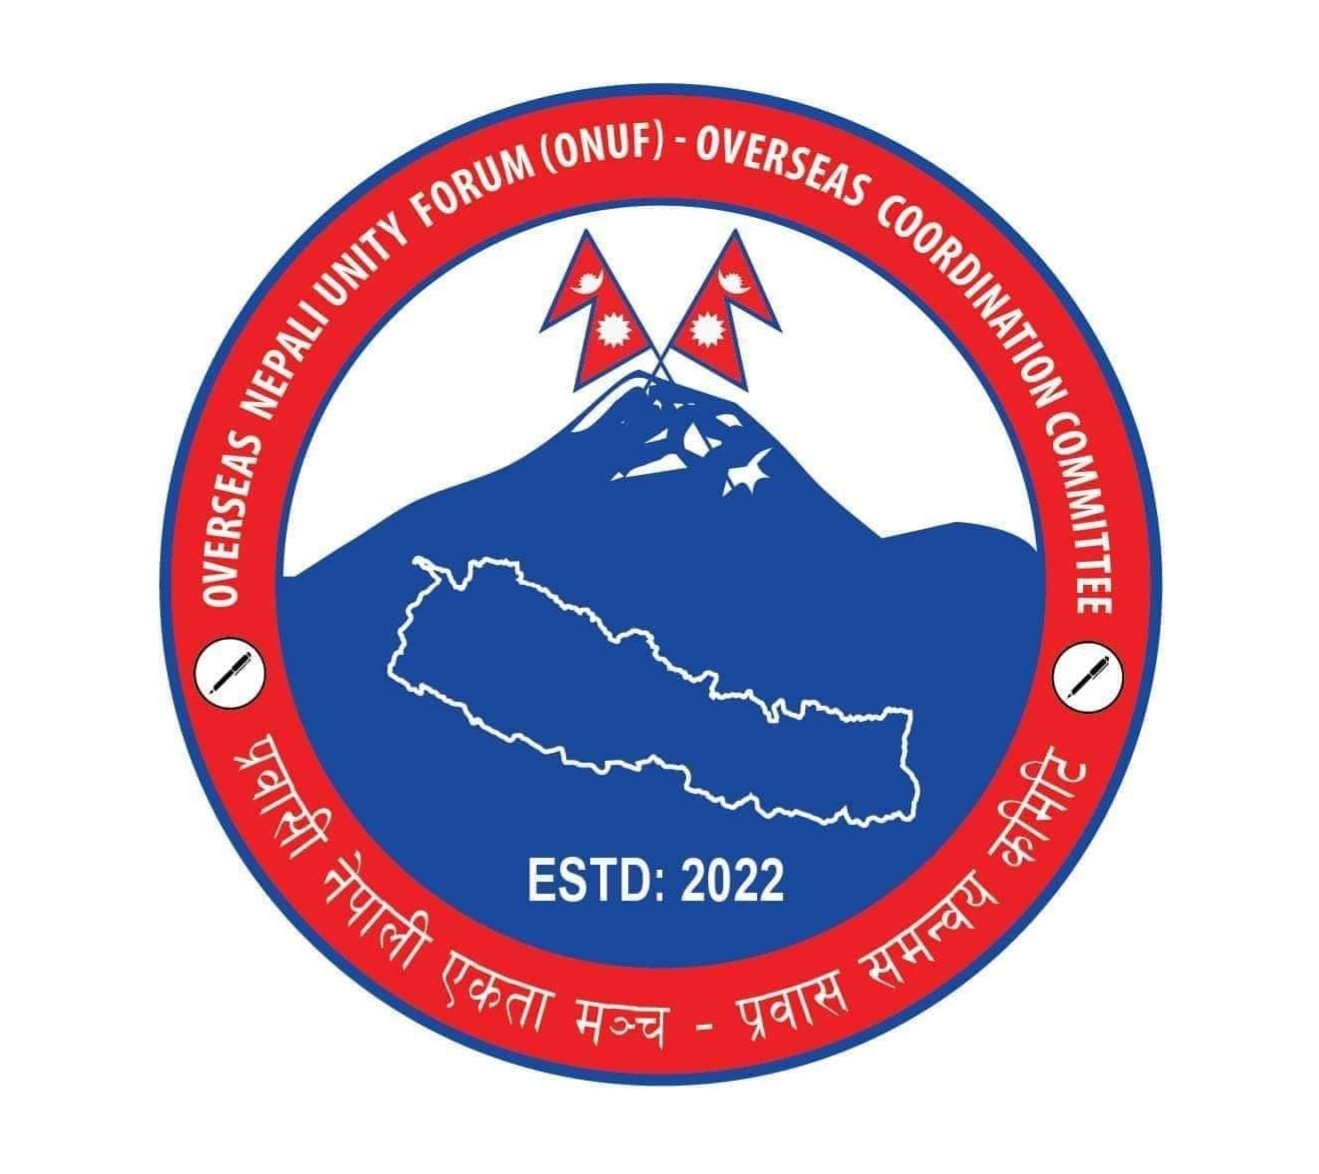 प्रवासी नेपाली एकता मञ्च अन्तर्राष्ट्रिय कमिटीको अधिवेशन जुलाई ६ र ७ काठमाडौंमा